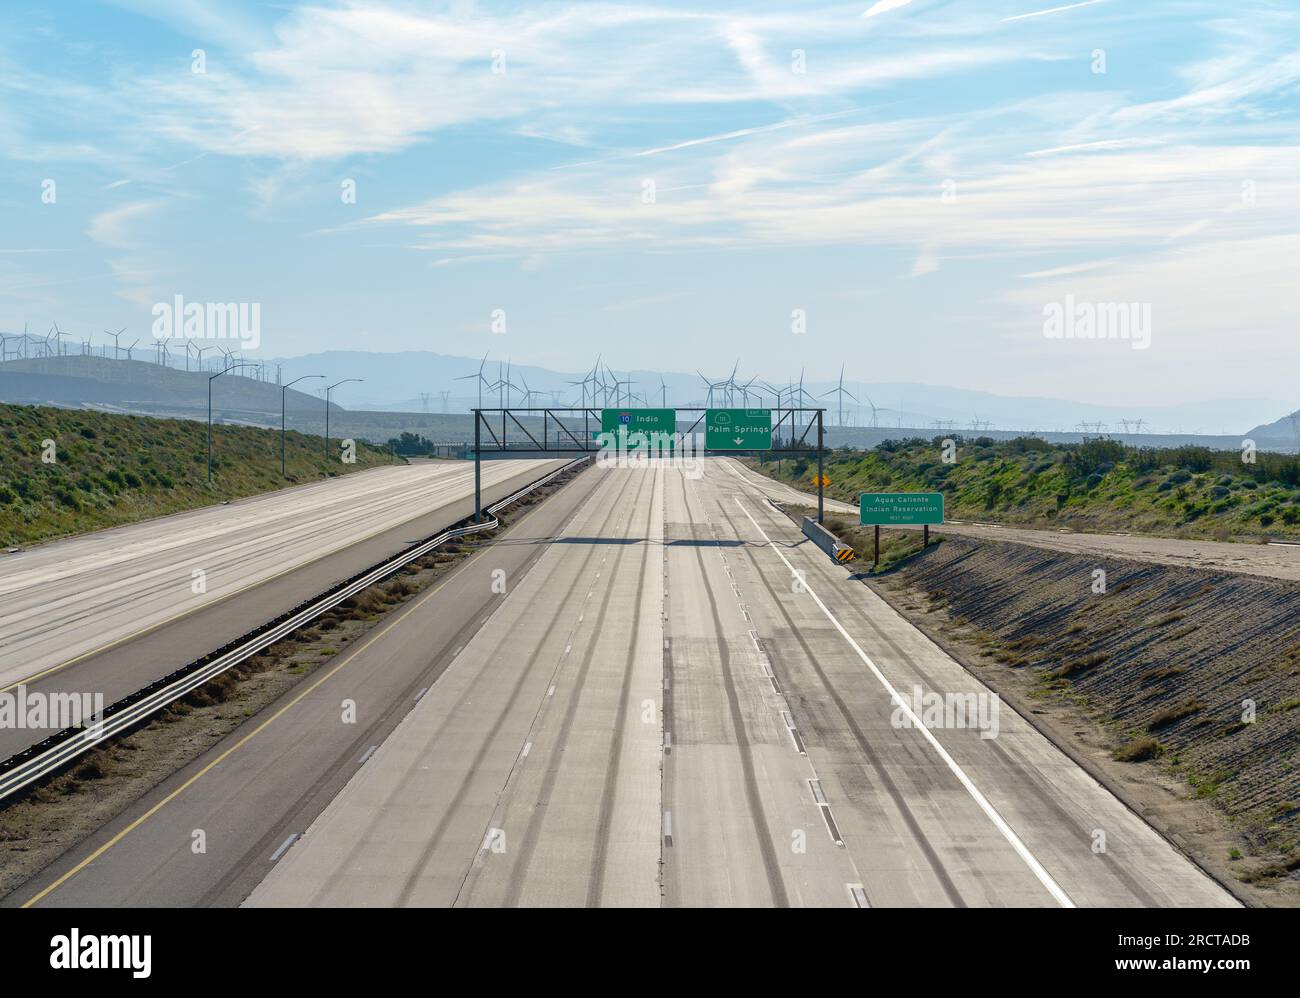 Prenez l'Interstate 10 en Californie près de Palm Springs et Indio California. Pas de voitures sur l'autoroute et moulins à vent en arrière-plan. Banque D'Images